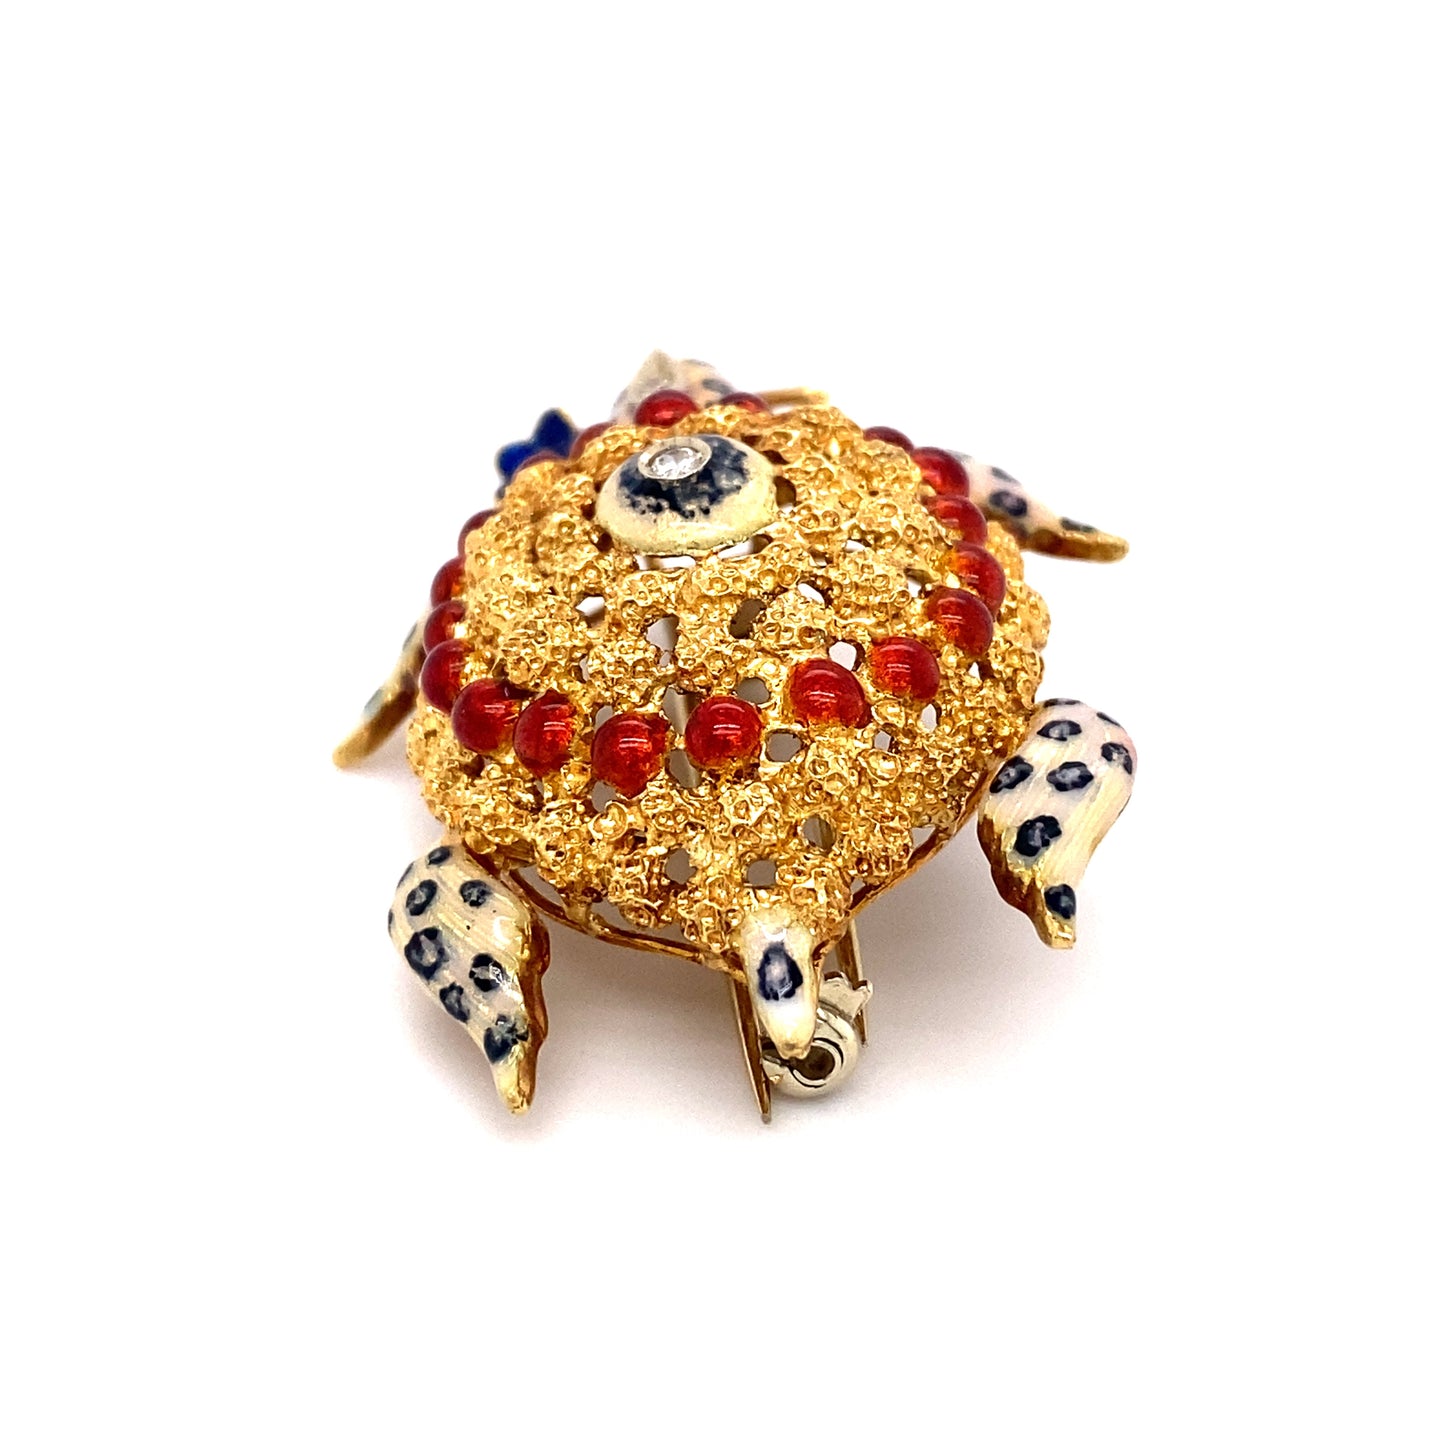 Circa 1970 Multicolored Enamel and Diamond Italian Turtle Brooch in 18K Gold